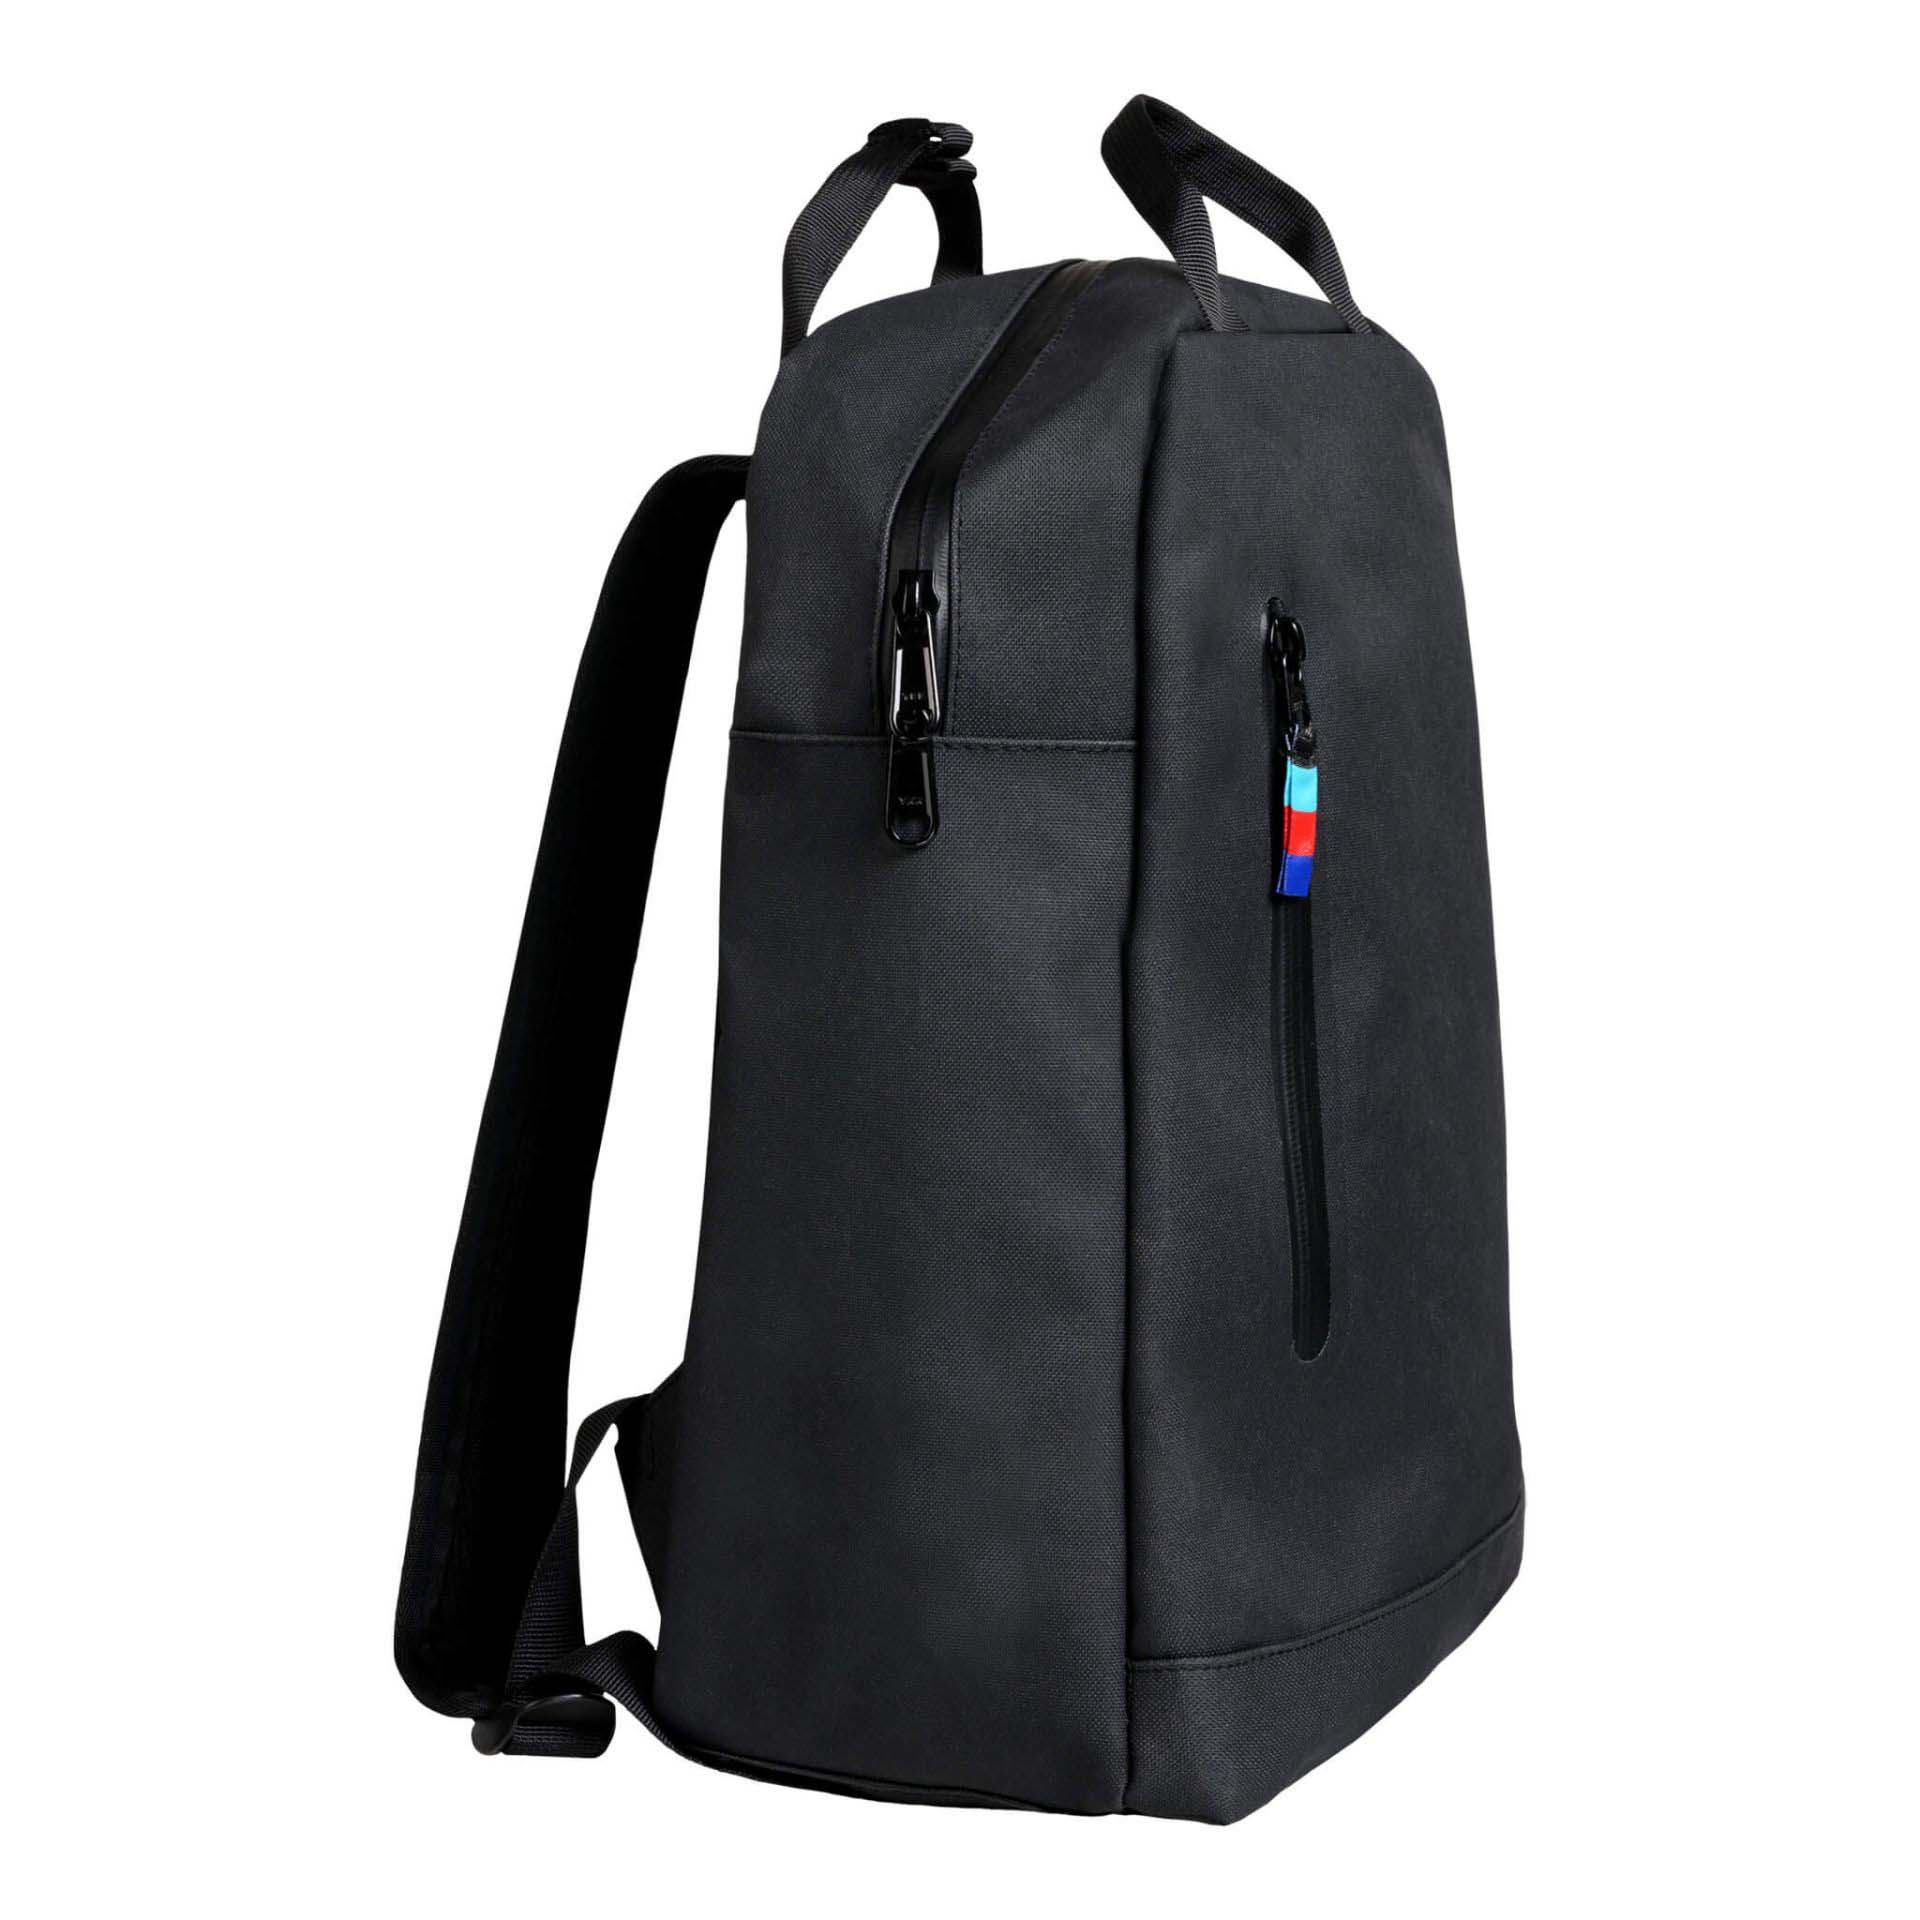 Got Bag Daypack Backpack Black